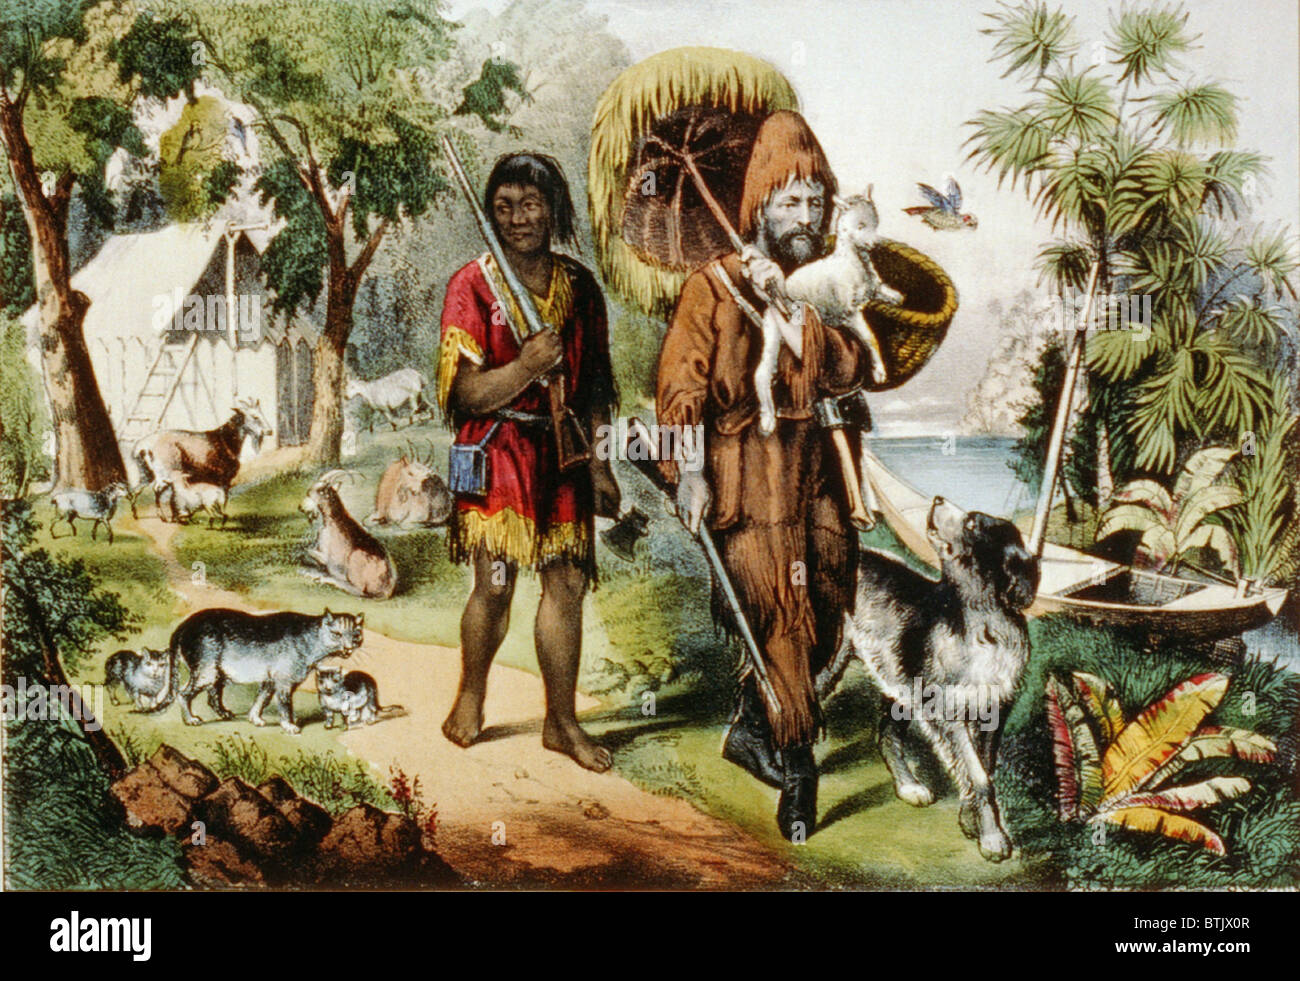 Le classique de Daniel Defoe, Robinson Crusoe, caractères et son compagnon vendredi, avec leurs animaux sur une île isolée. Écrit en 1720, 'Robinson Crusoe' a maintenu sa popularité dans le 20e siècle. 1875 Currier et Ives imprimer. Banque D'Images